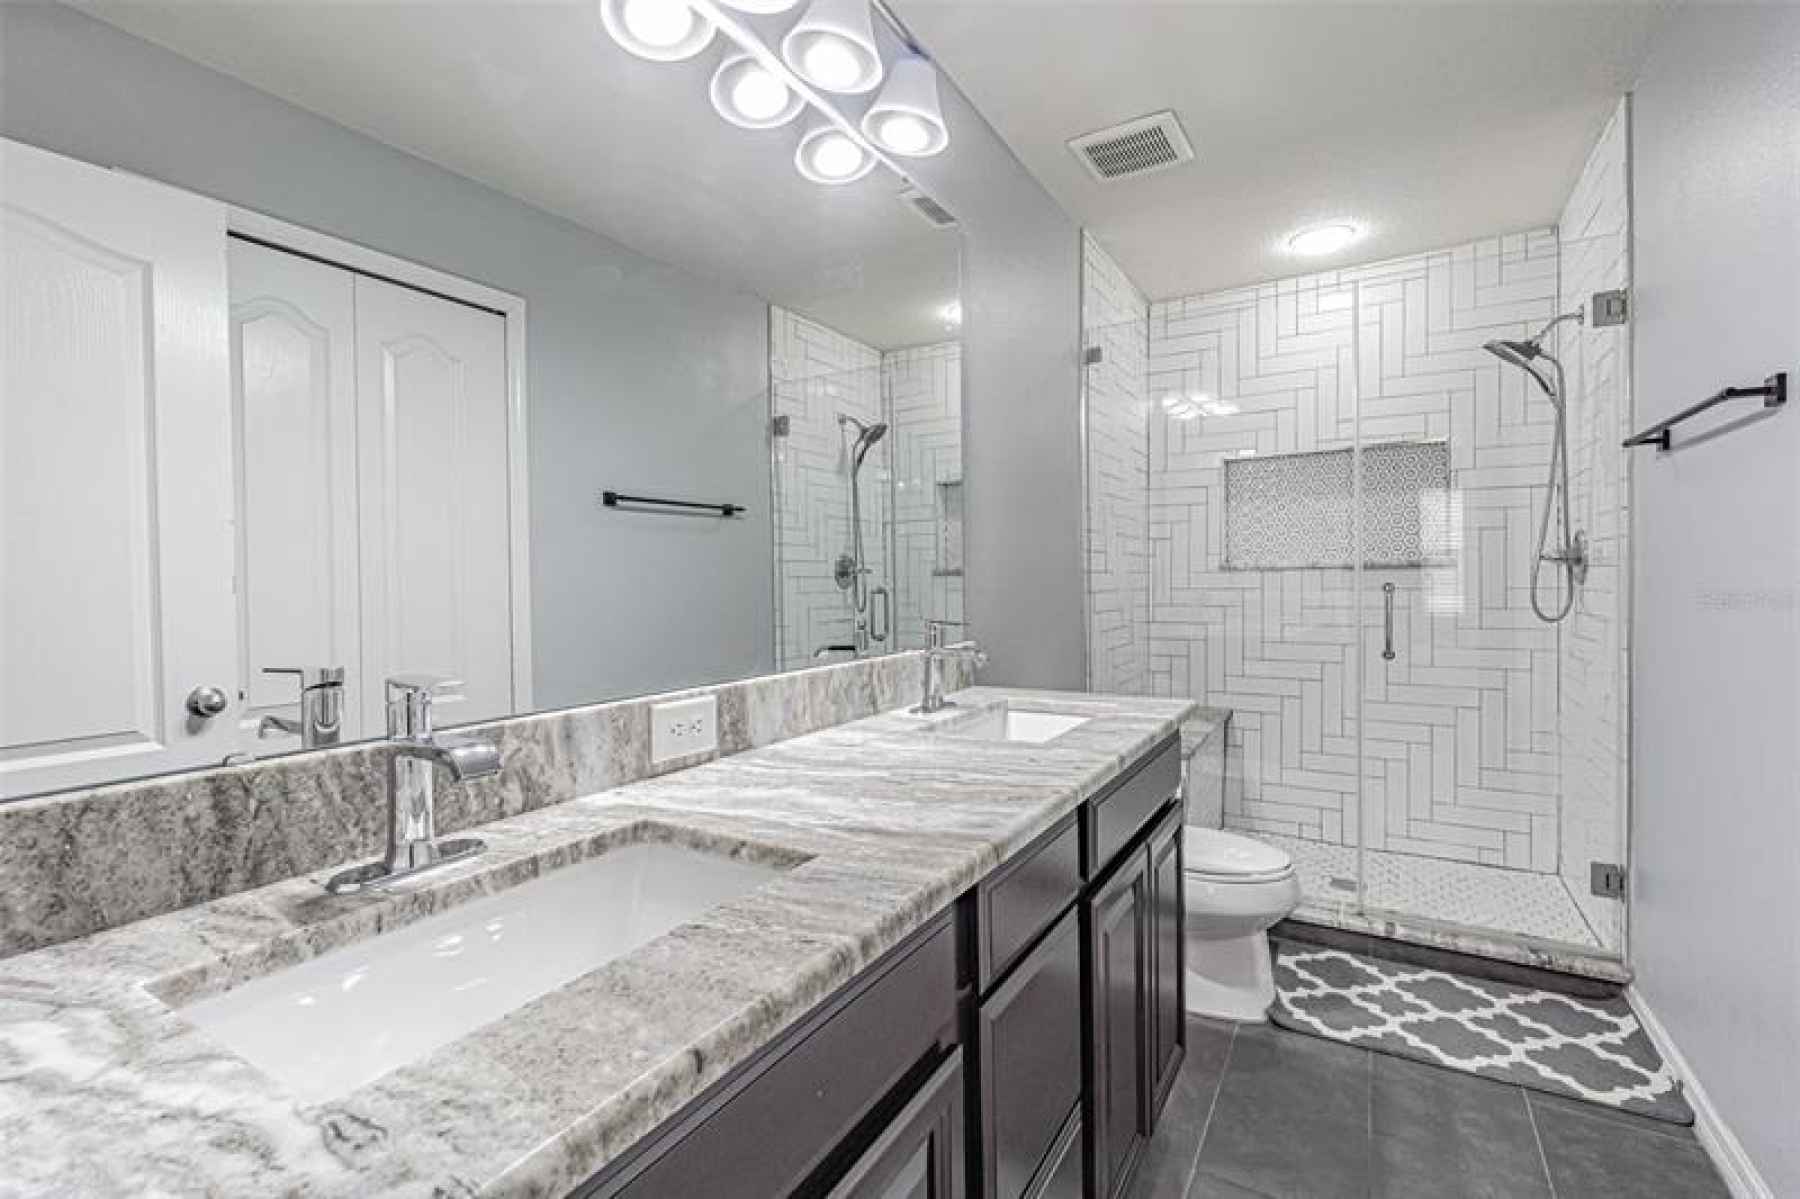 Master bathroom features modern double vanities